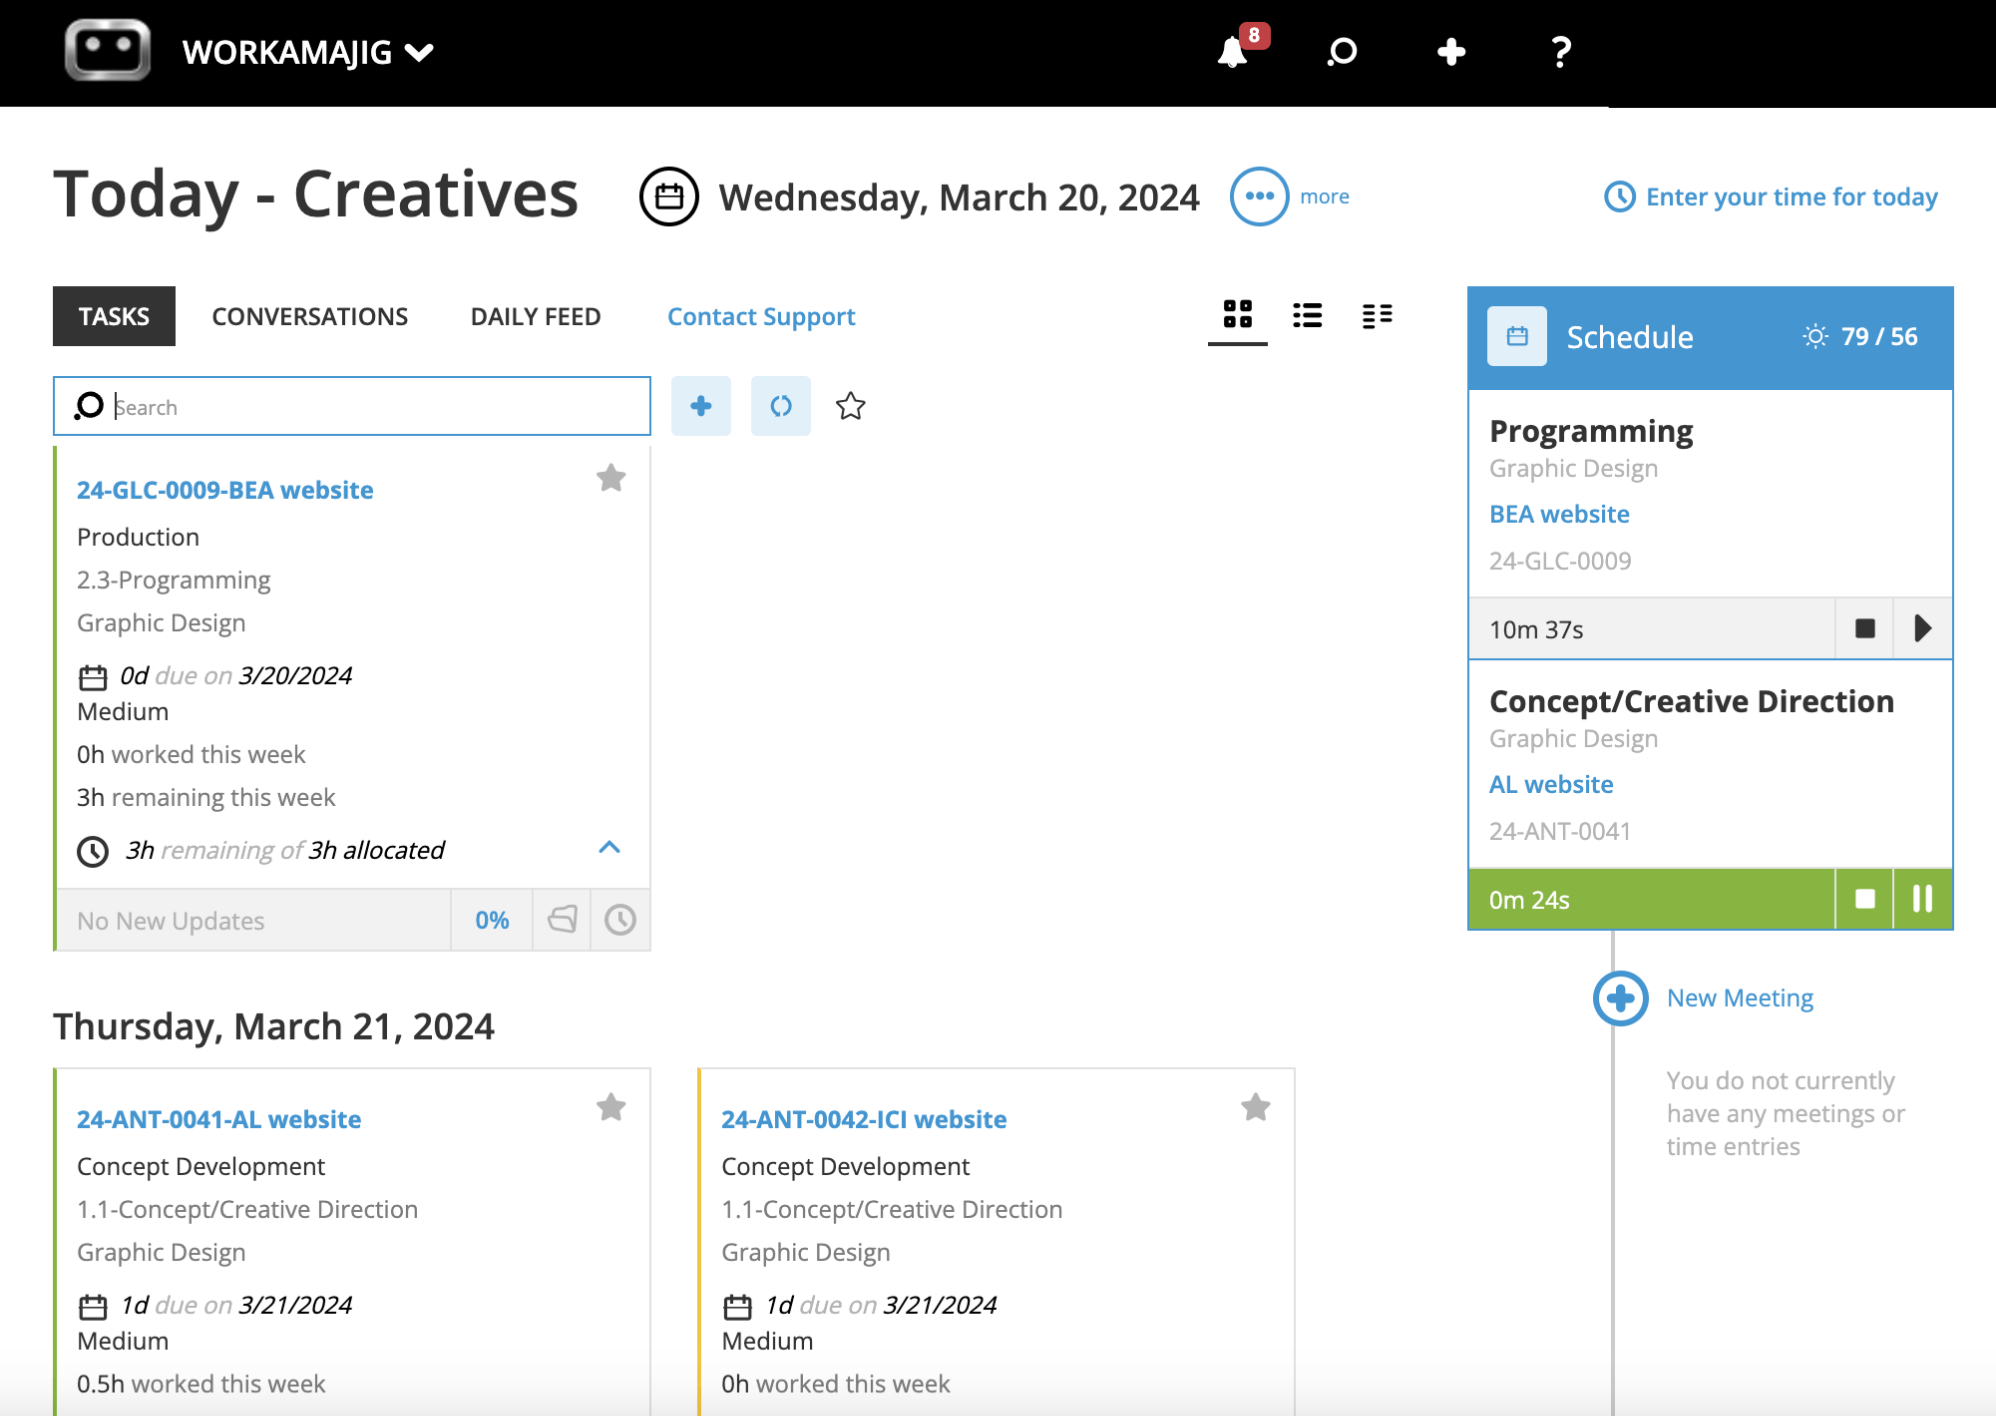 Workamajig Today - Creatives - Tasks & Schedule